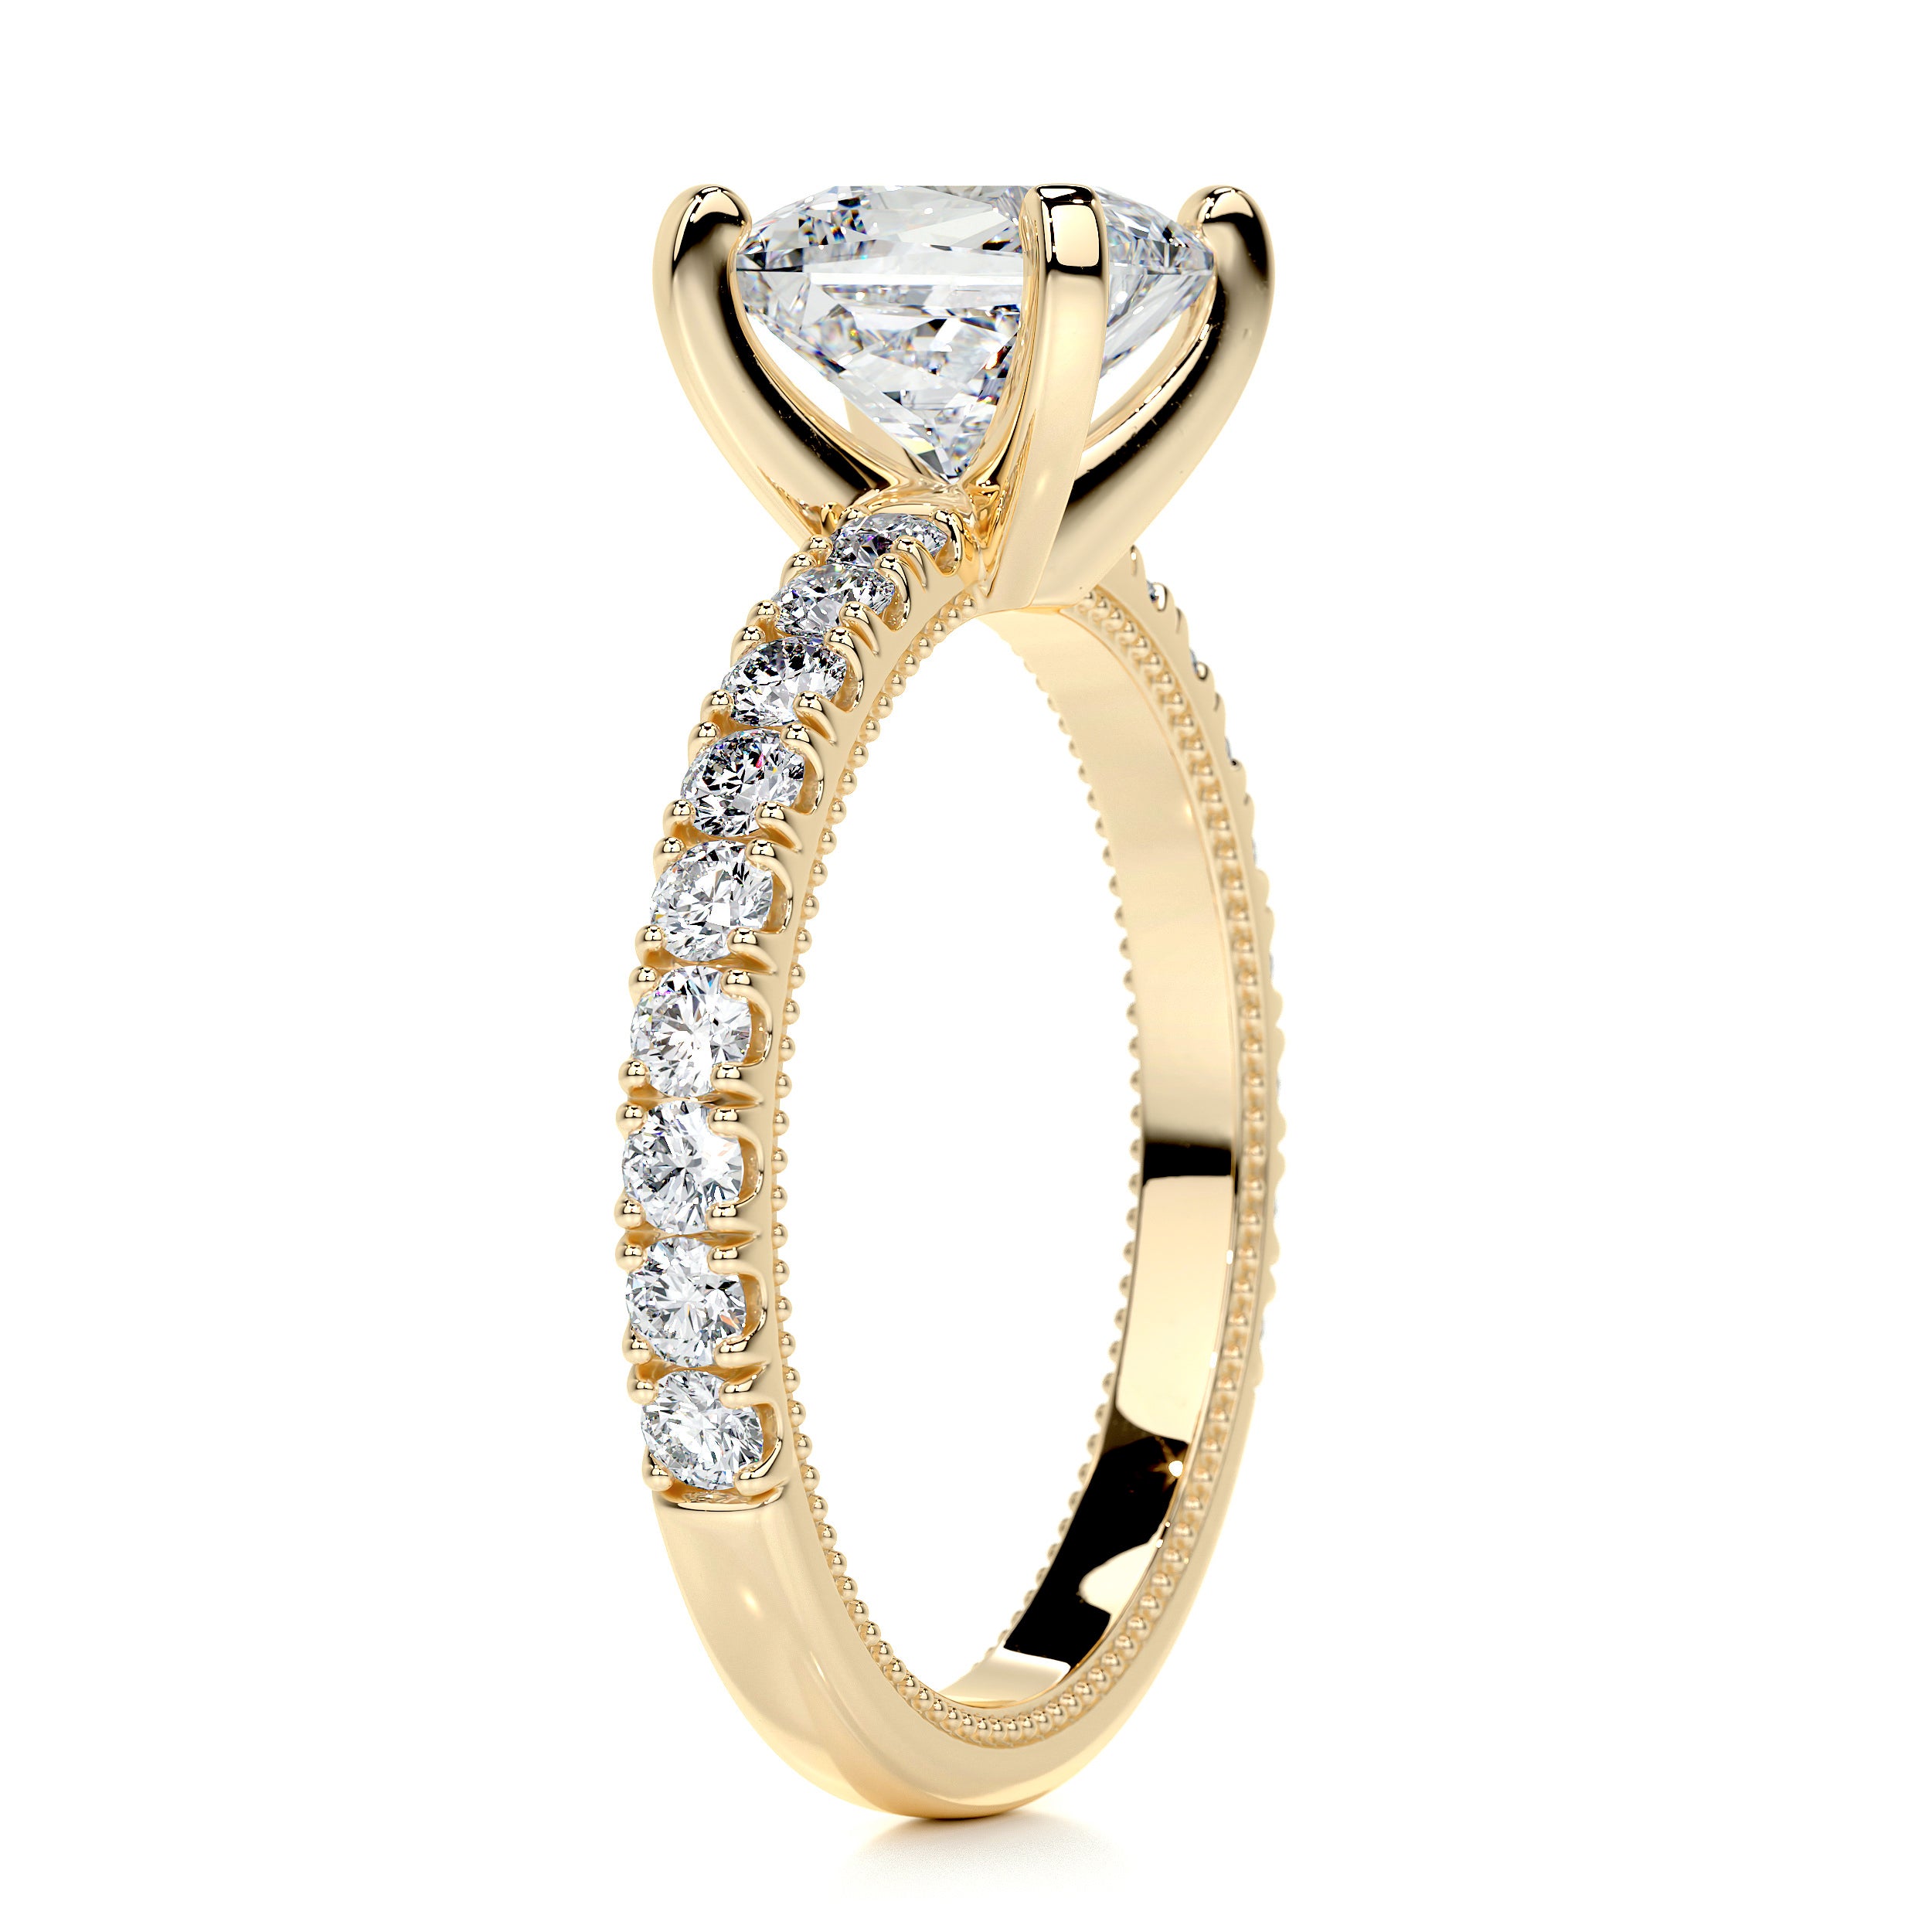 Blair Diamond Engagement Ring   (2 Carat) -18K Yellow Gold